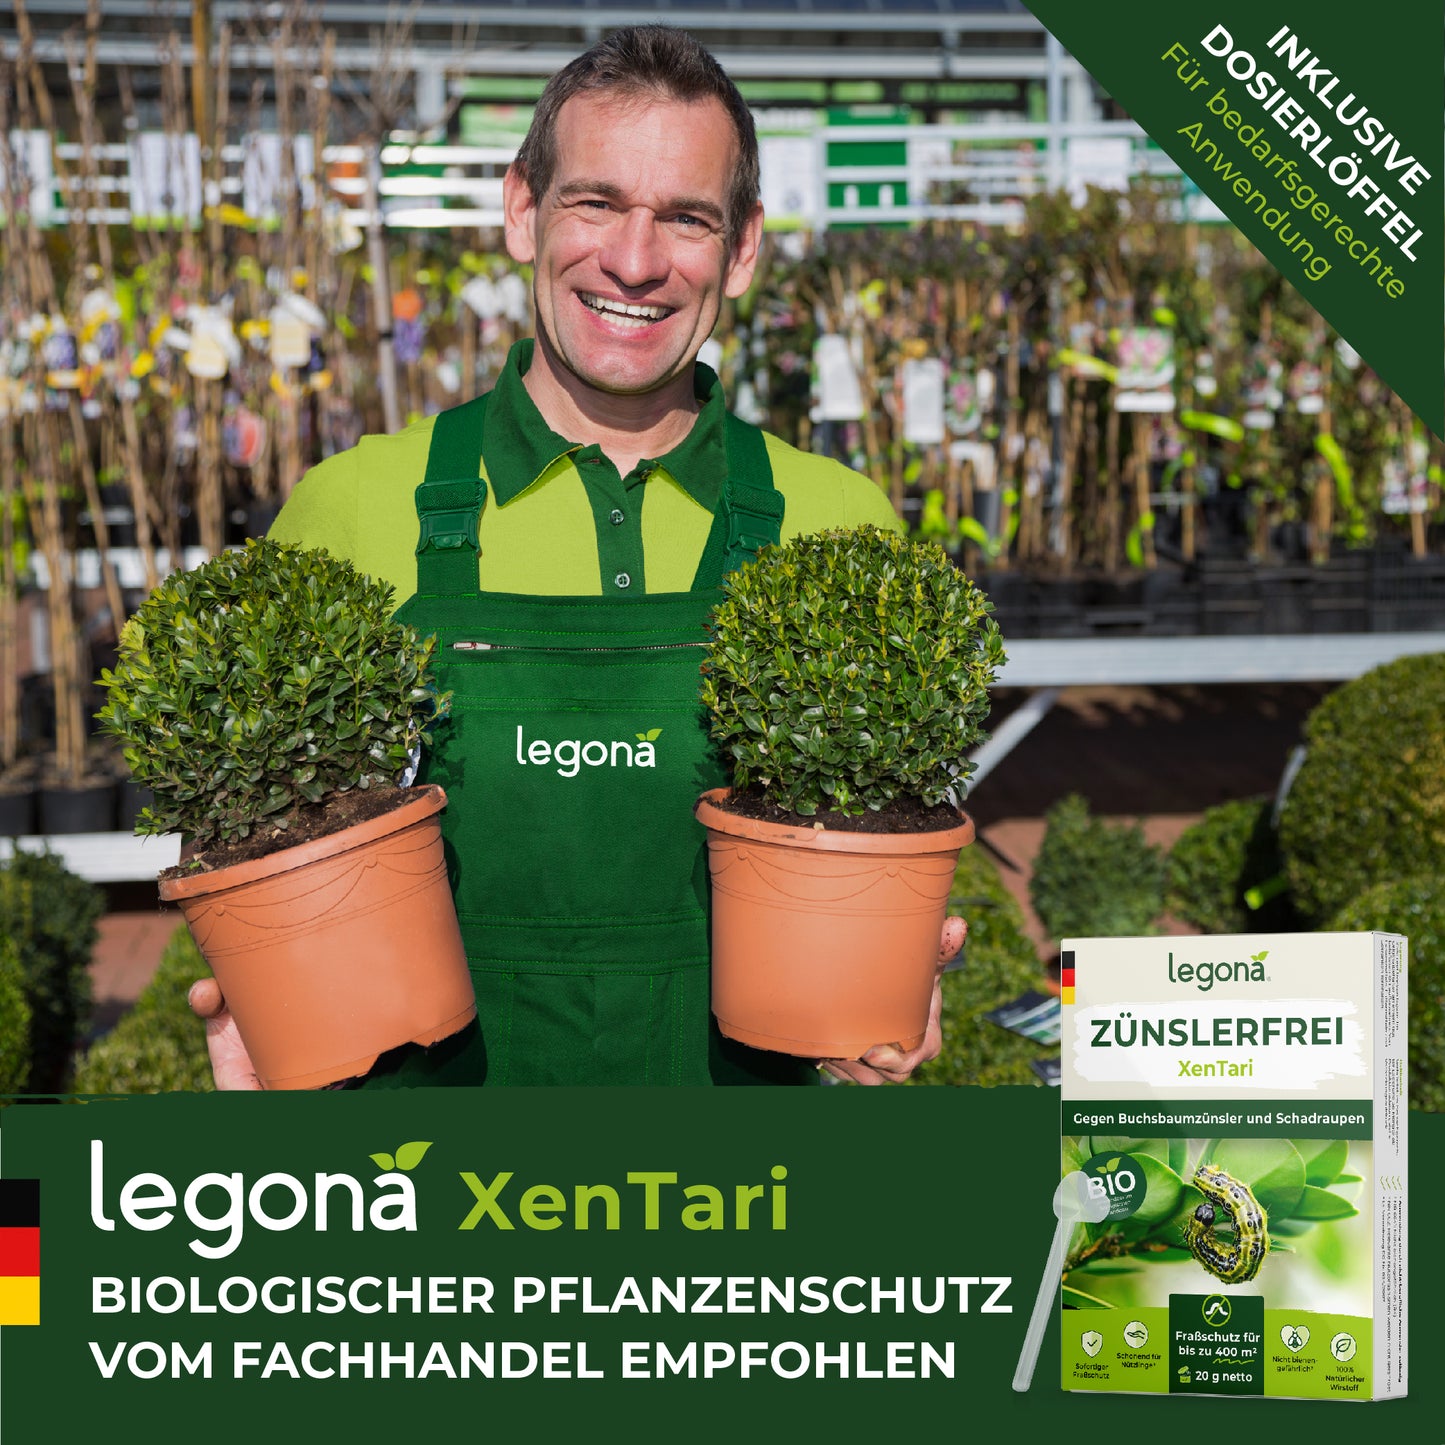 XenTari Zünslerfrei & Raupenfrei - 100% biologisch und nachhaltig